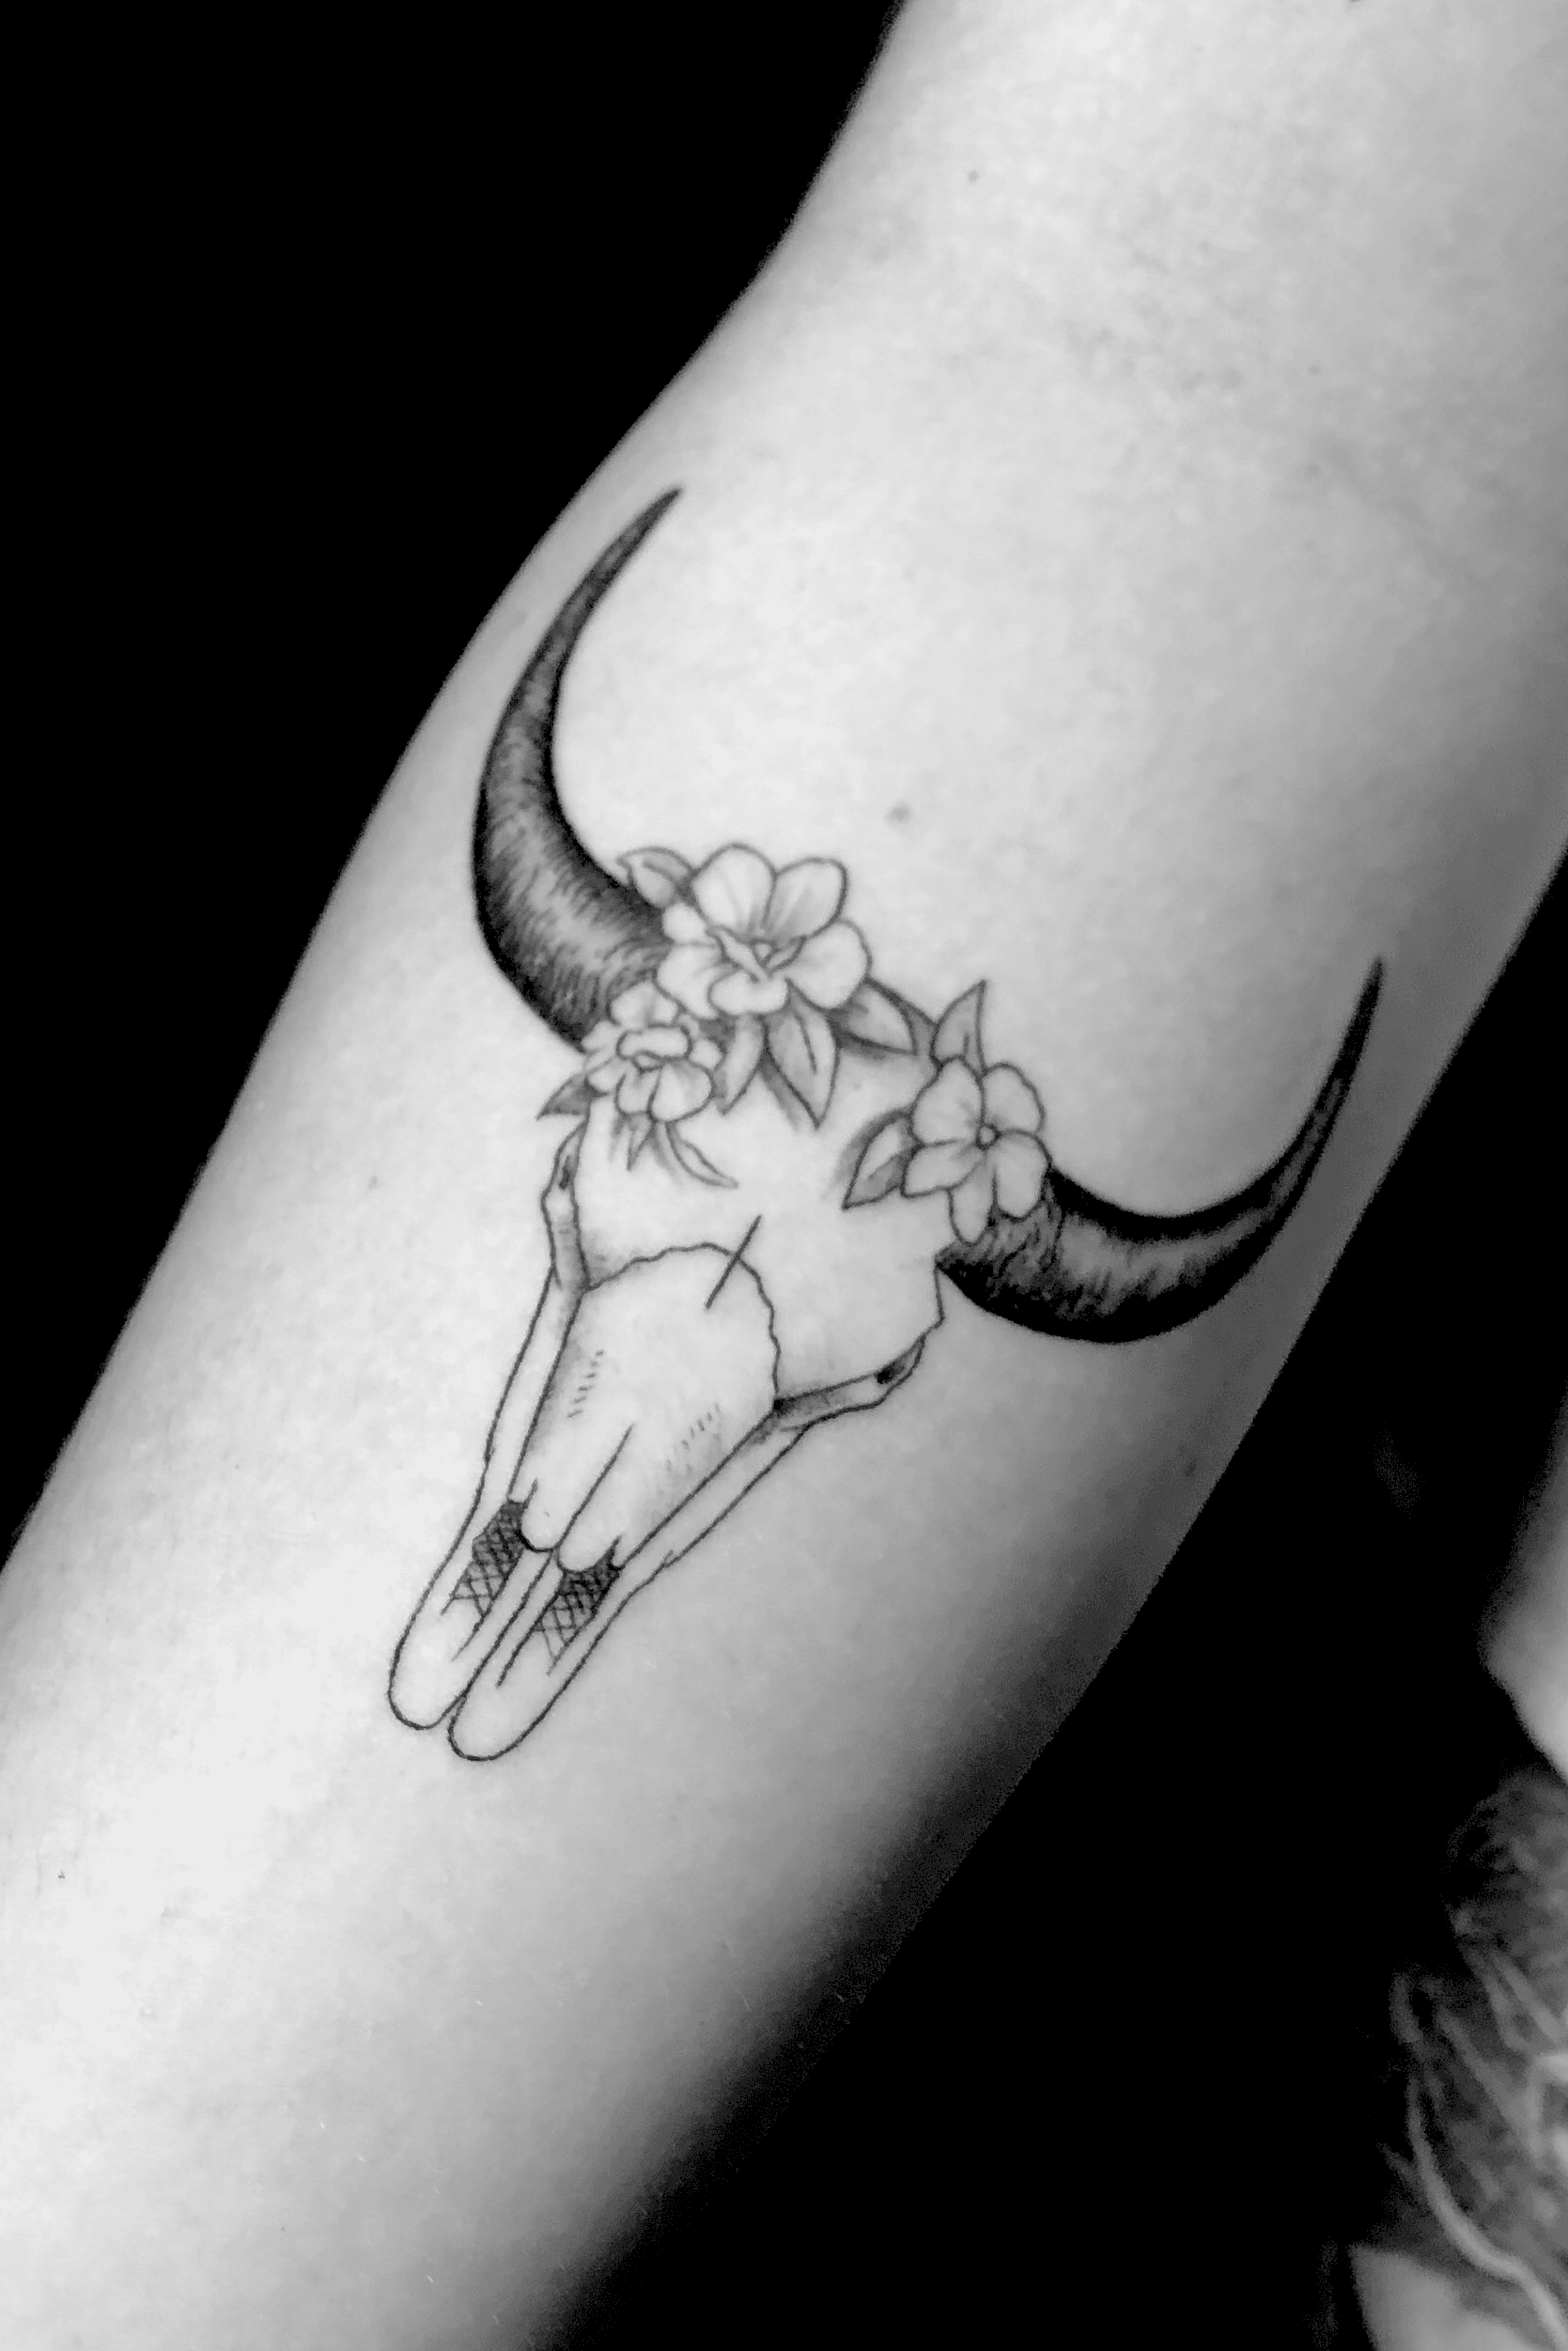 Cattle Skull Bull Horn Temporary Tattoo Sticker Set of 2  Bull skull  tattoos Cow skull tattoos Taurus tattoos